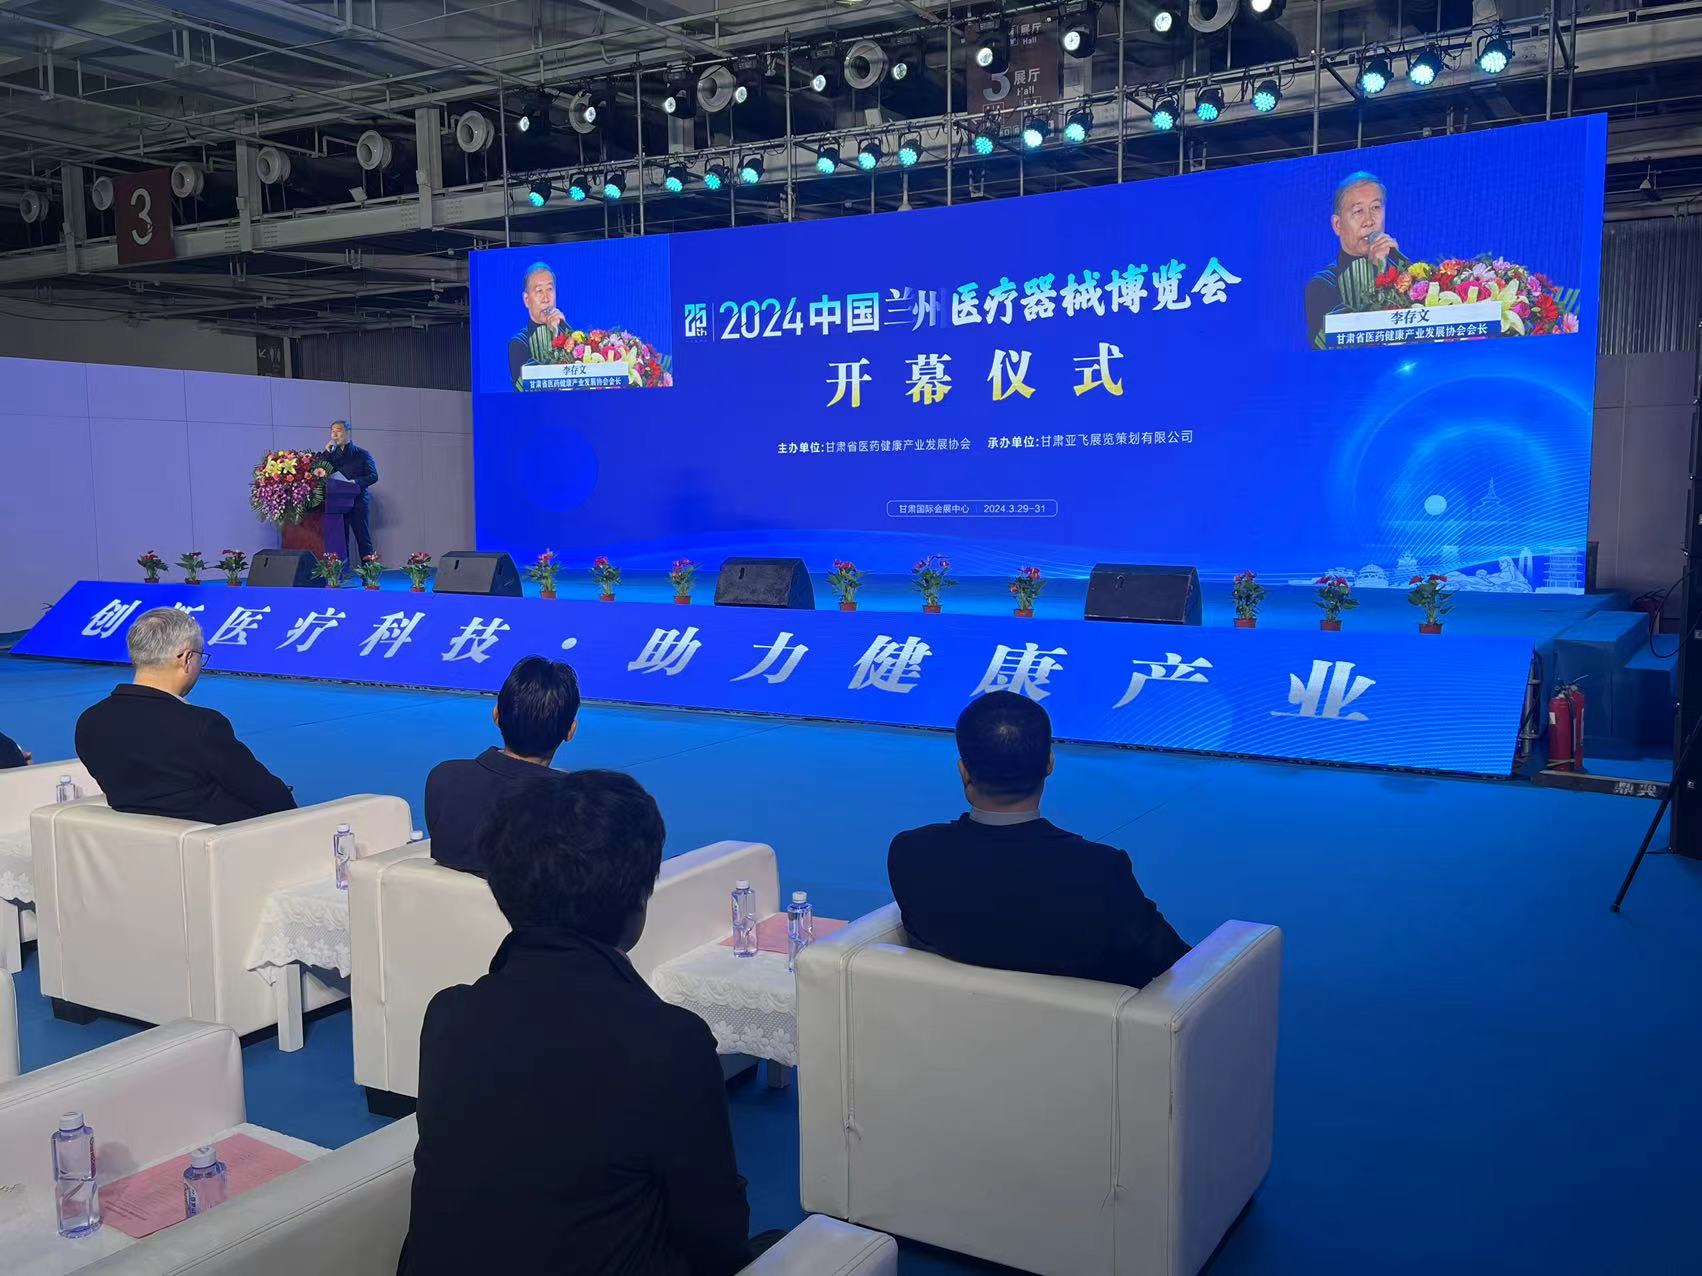 冠云科技亮相第25届中国兰州医疗器械博览会